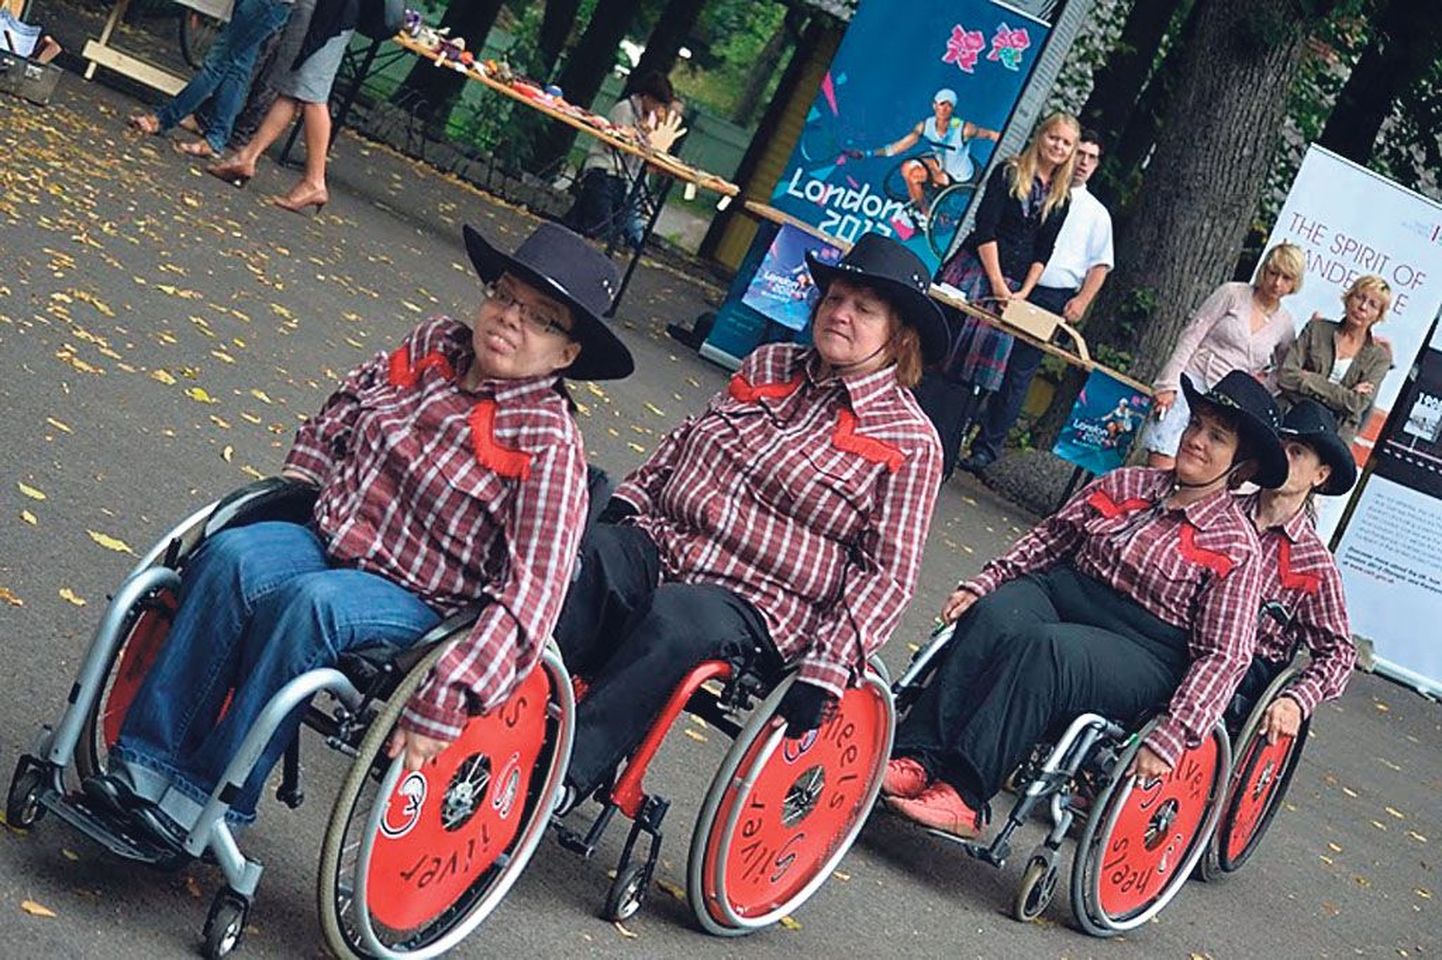 Pärnakate algatus tõi kümme aastat tagasi ratastoolitantsu kultuuri Eestisse. Aeg on läinud nii kiiresti, et esimene ümmargune aastapäev saabus neile endalegi ootamatult.